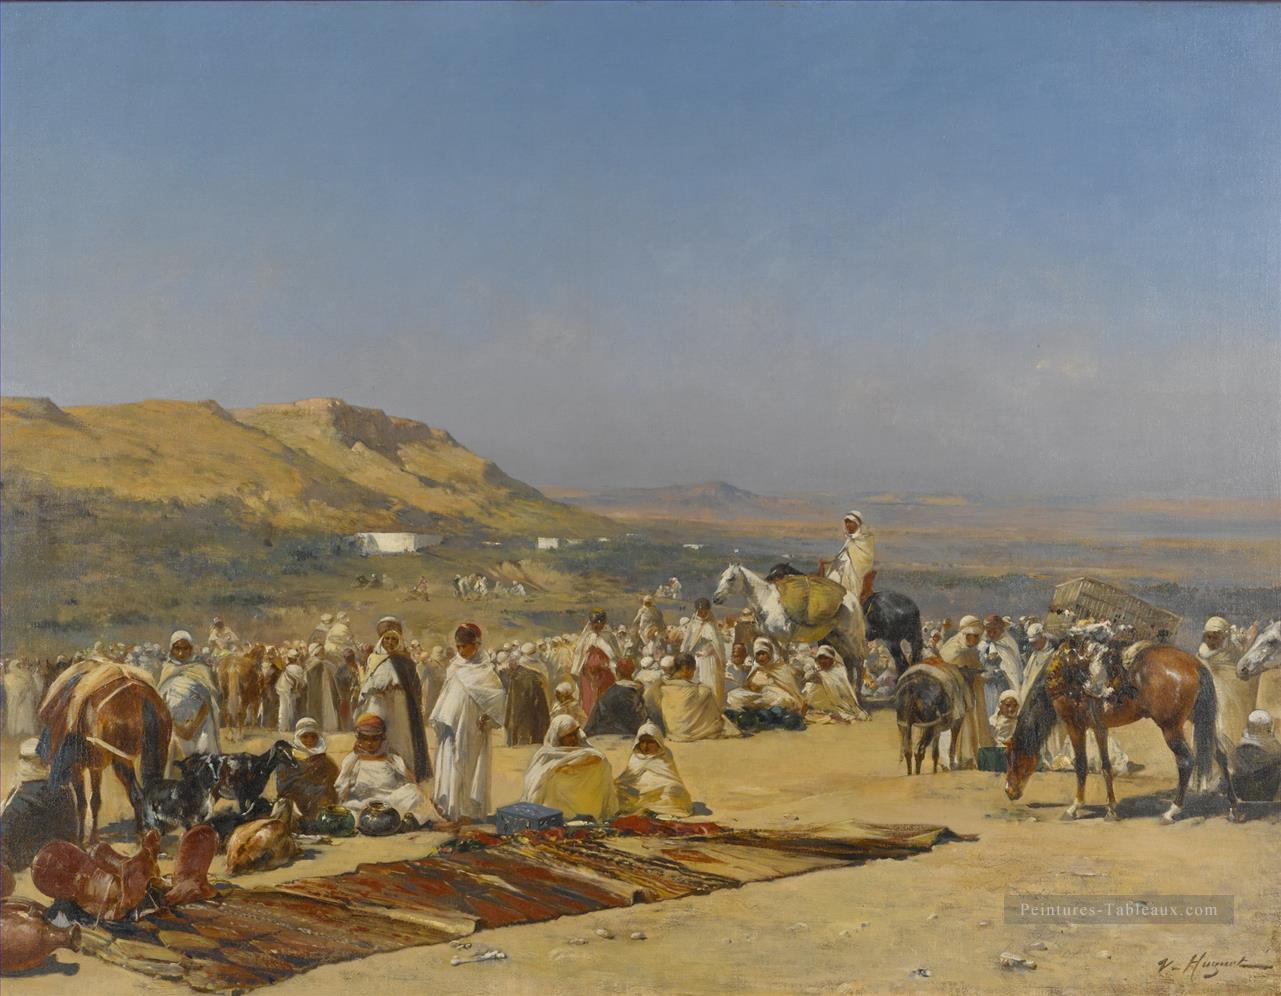 MARCHÉ dans le désert Victor Huguet Araber Peintures à l'huile